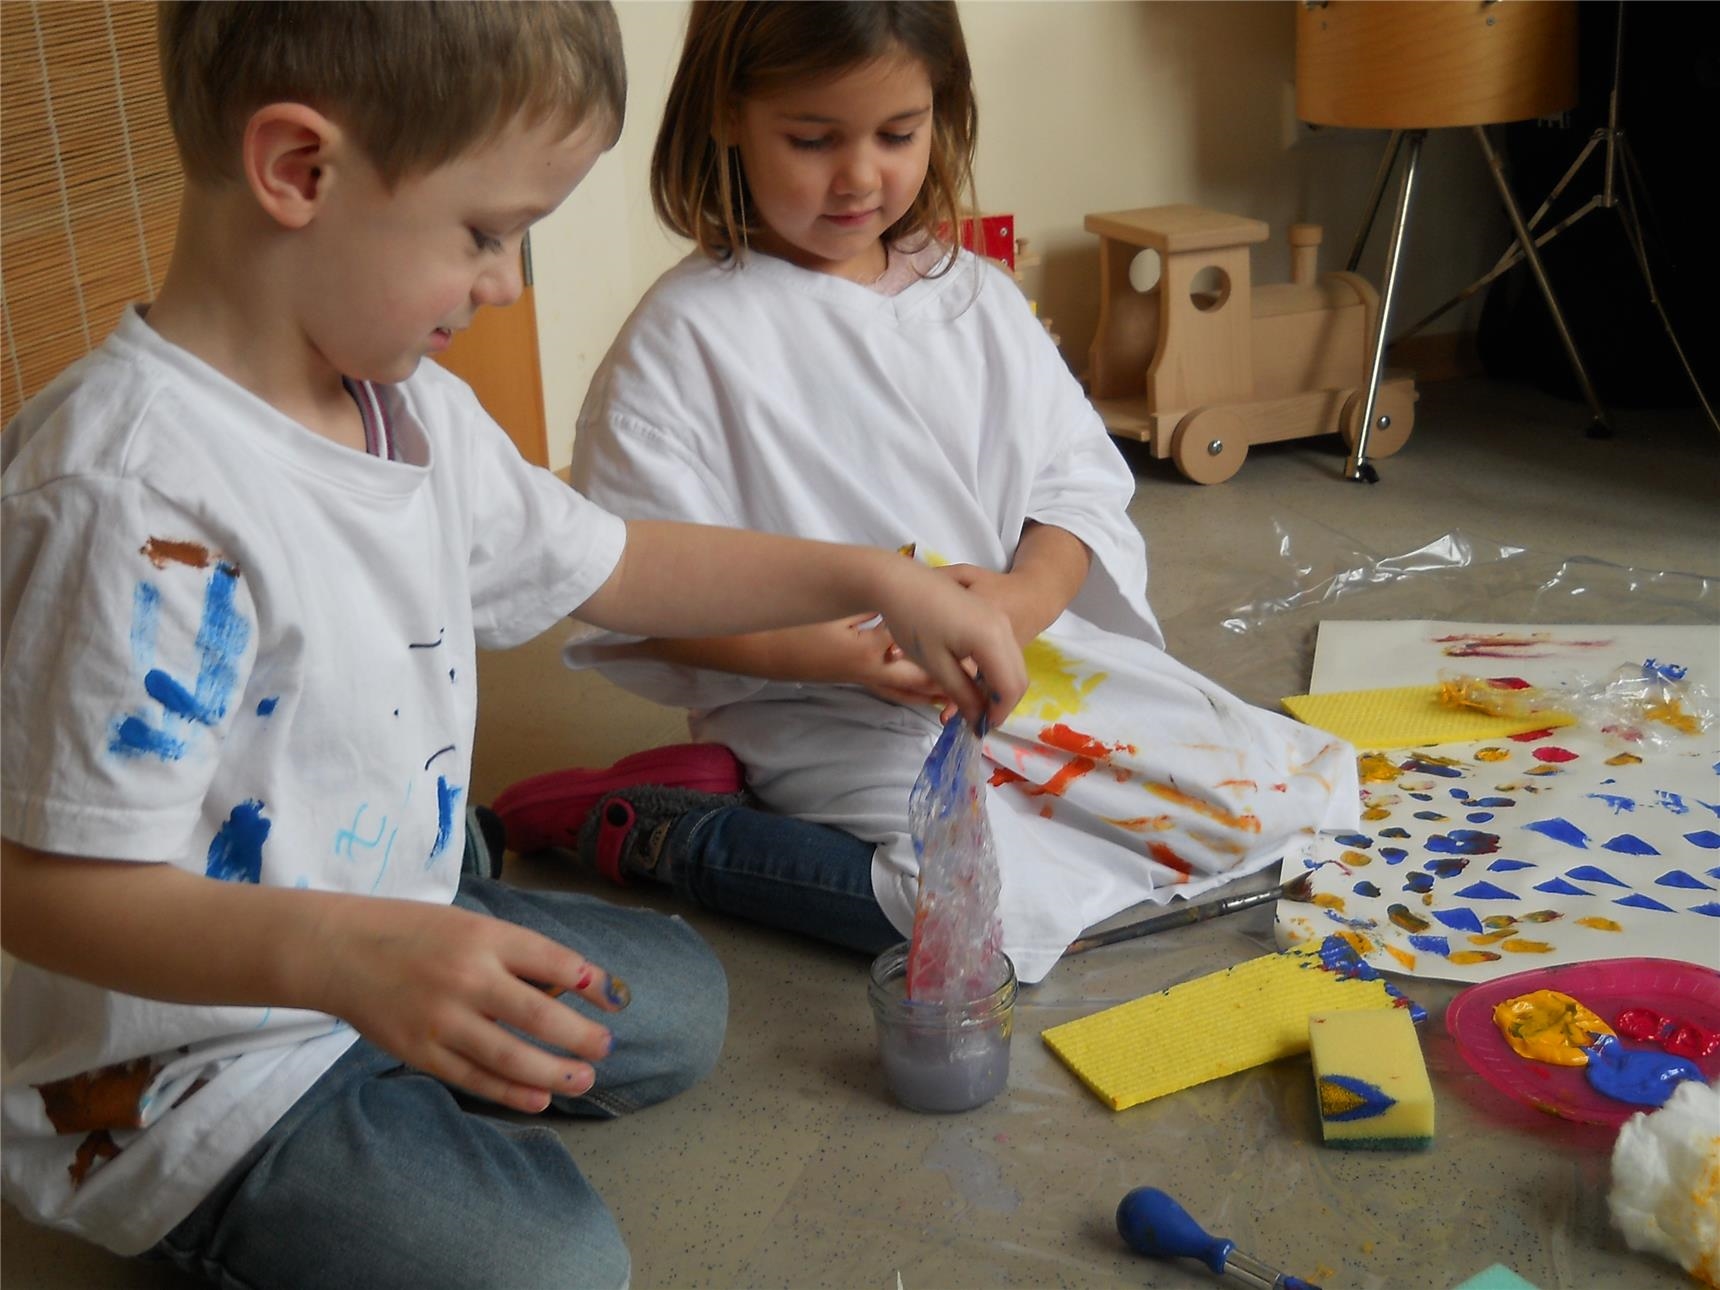 zwei Kinder Knien auf dem Boden, auf dem Papier, Schwämme, Pinsel, Farbe und ein Wasserbehälter verteilt sind (Caritasverband Trier e. V.)